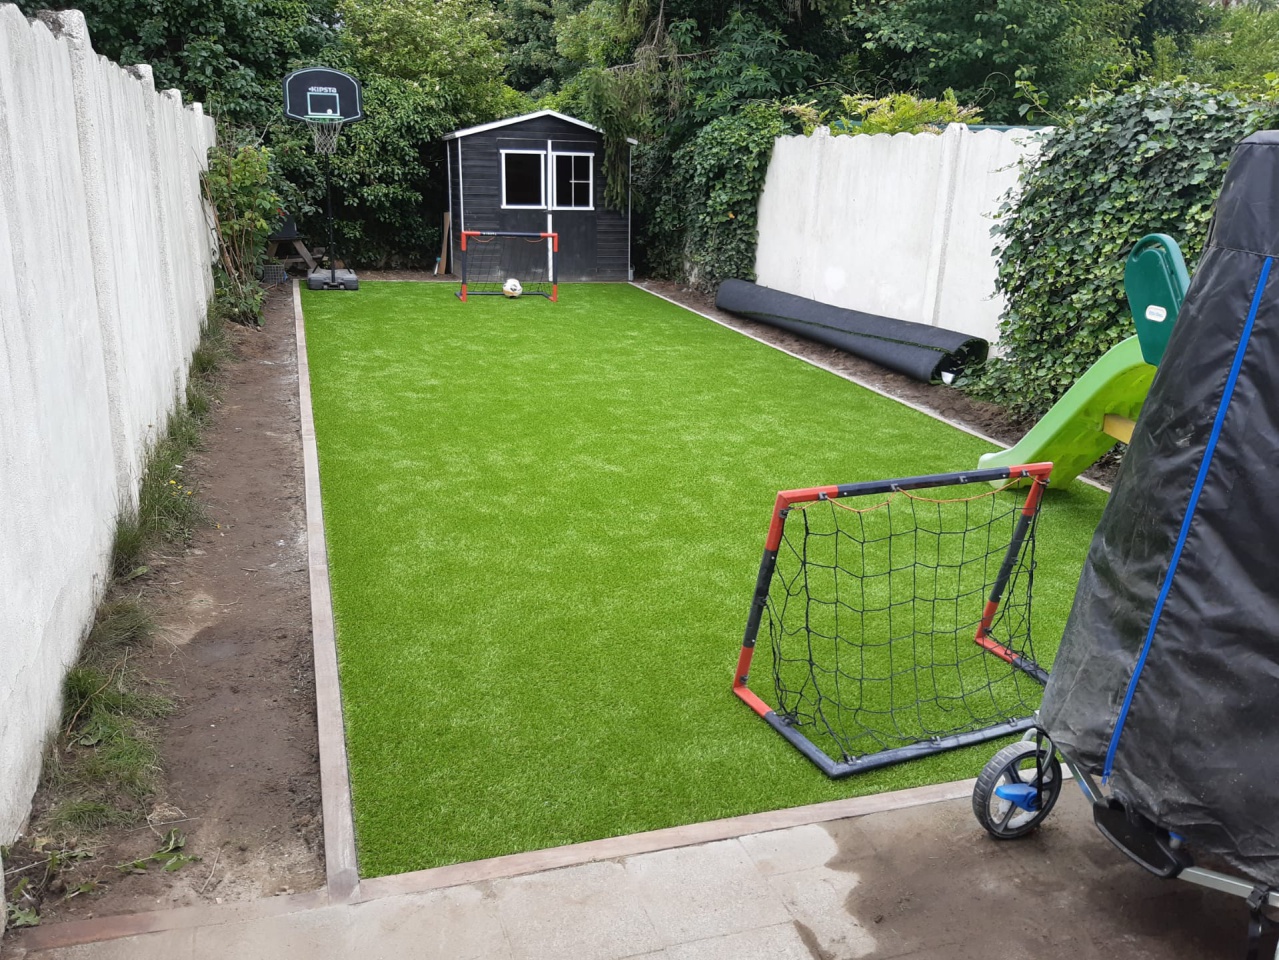 terrain de foot dans le jardin pour les enfants